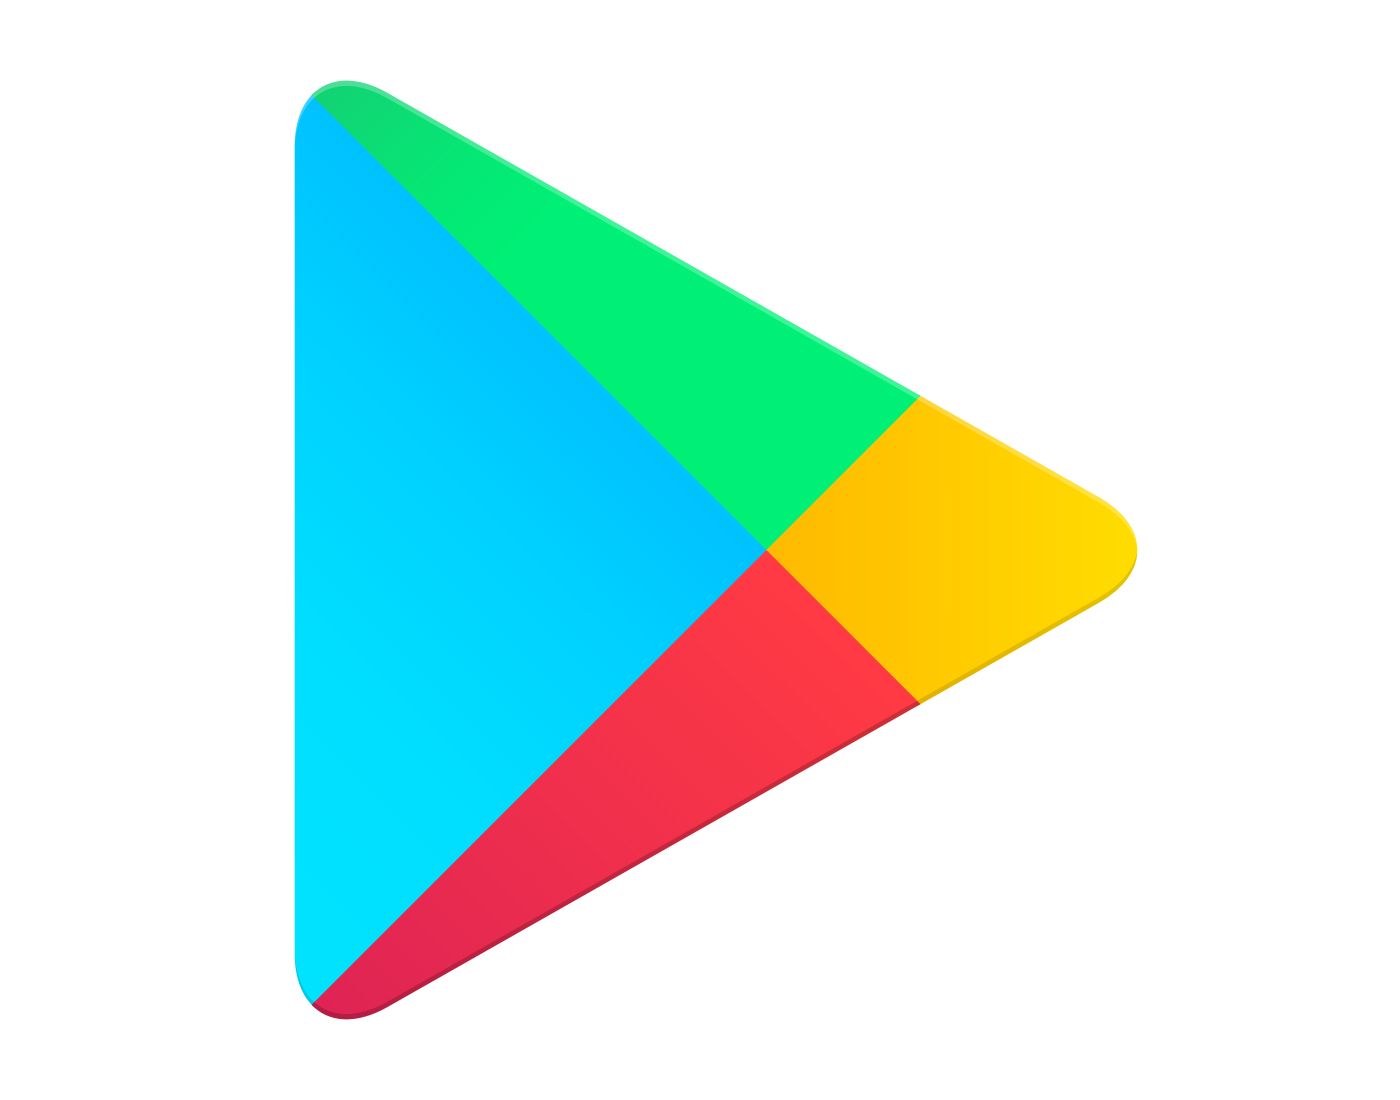 Google Play – Logos Downloa